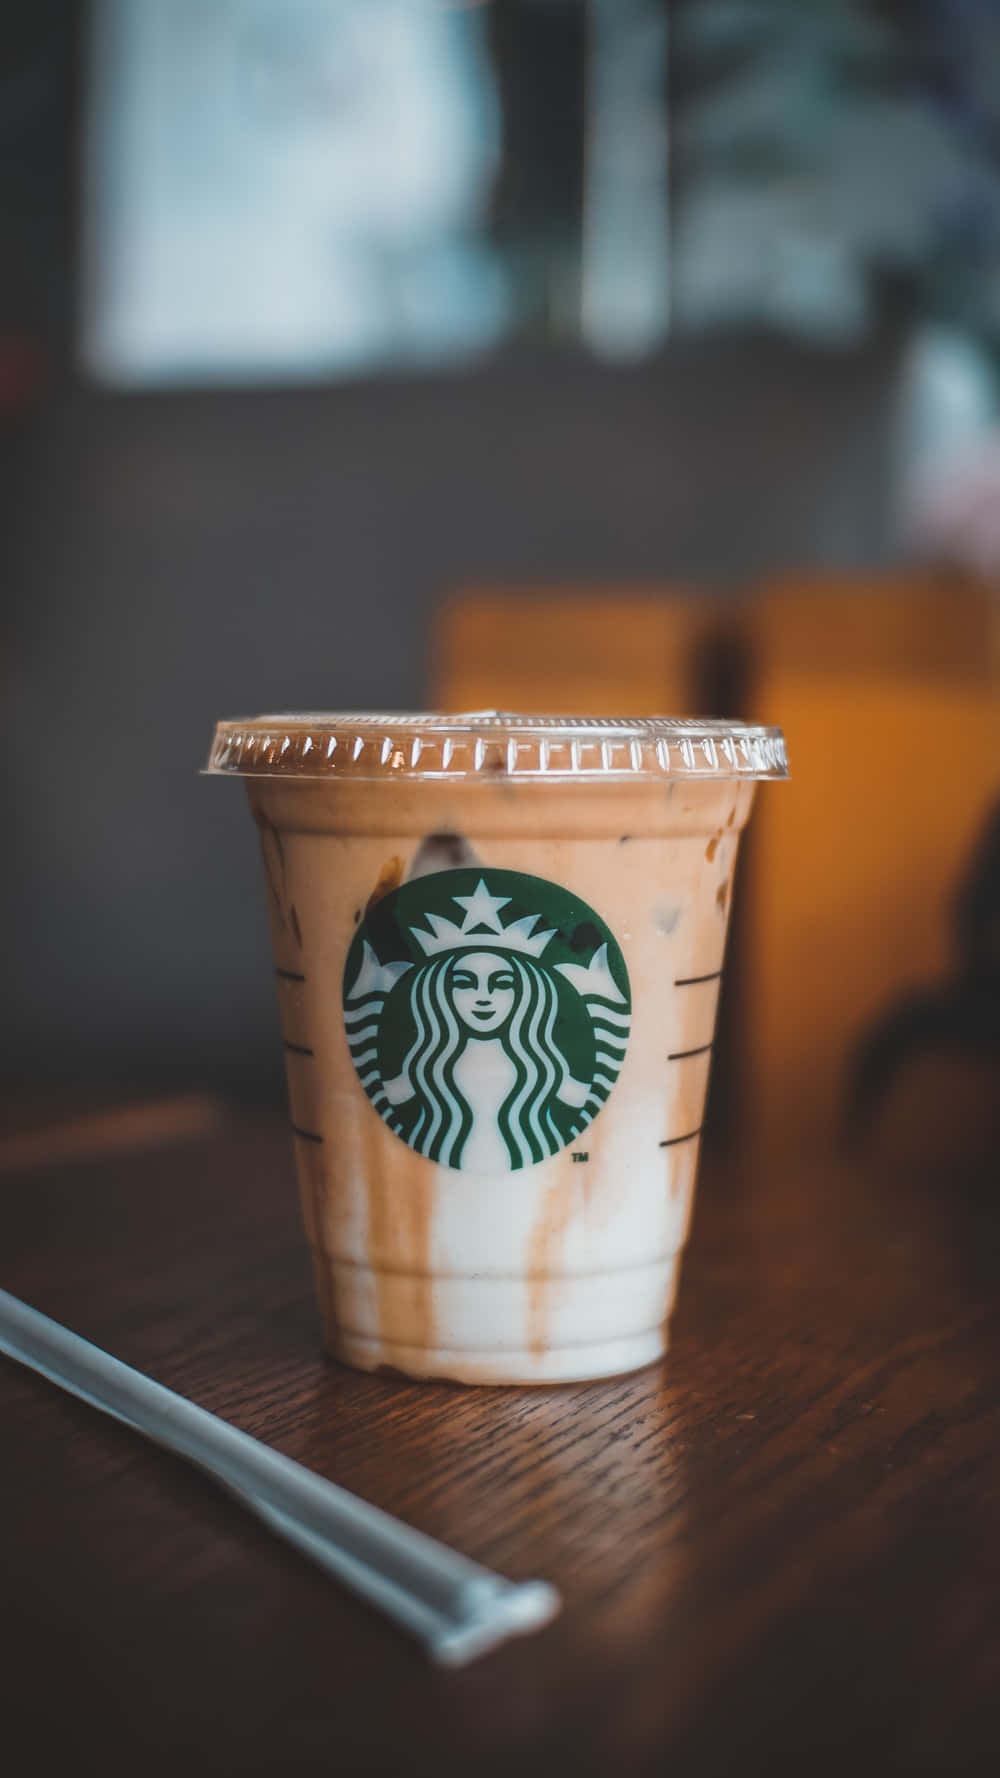 Disfrutandode Una Taza Caliente Y Acogedora De Café De Starbucks En Este Fresco Y Soleado Día De Verano. Fondo de pantalla